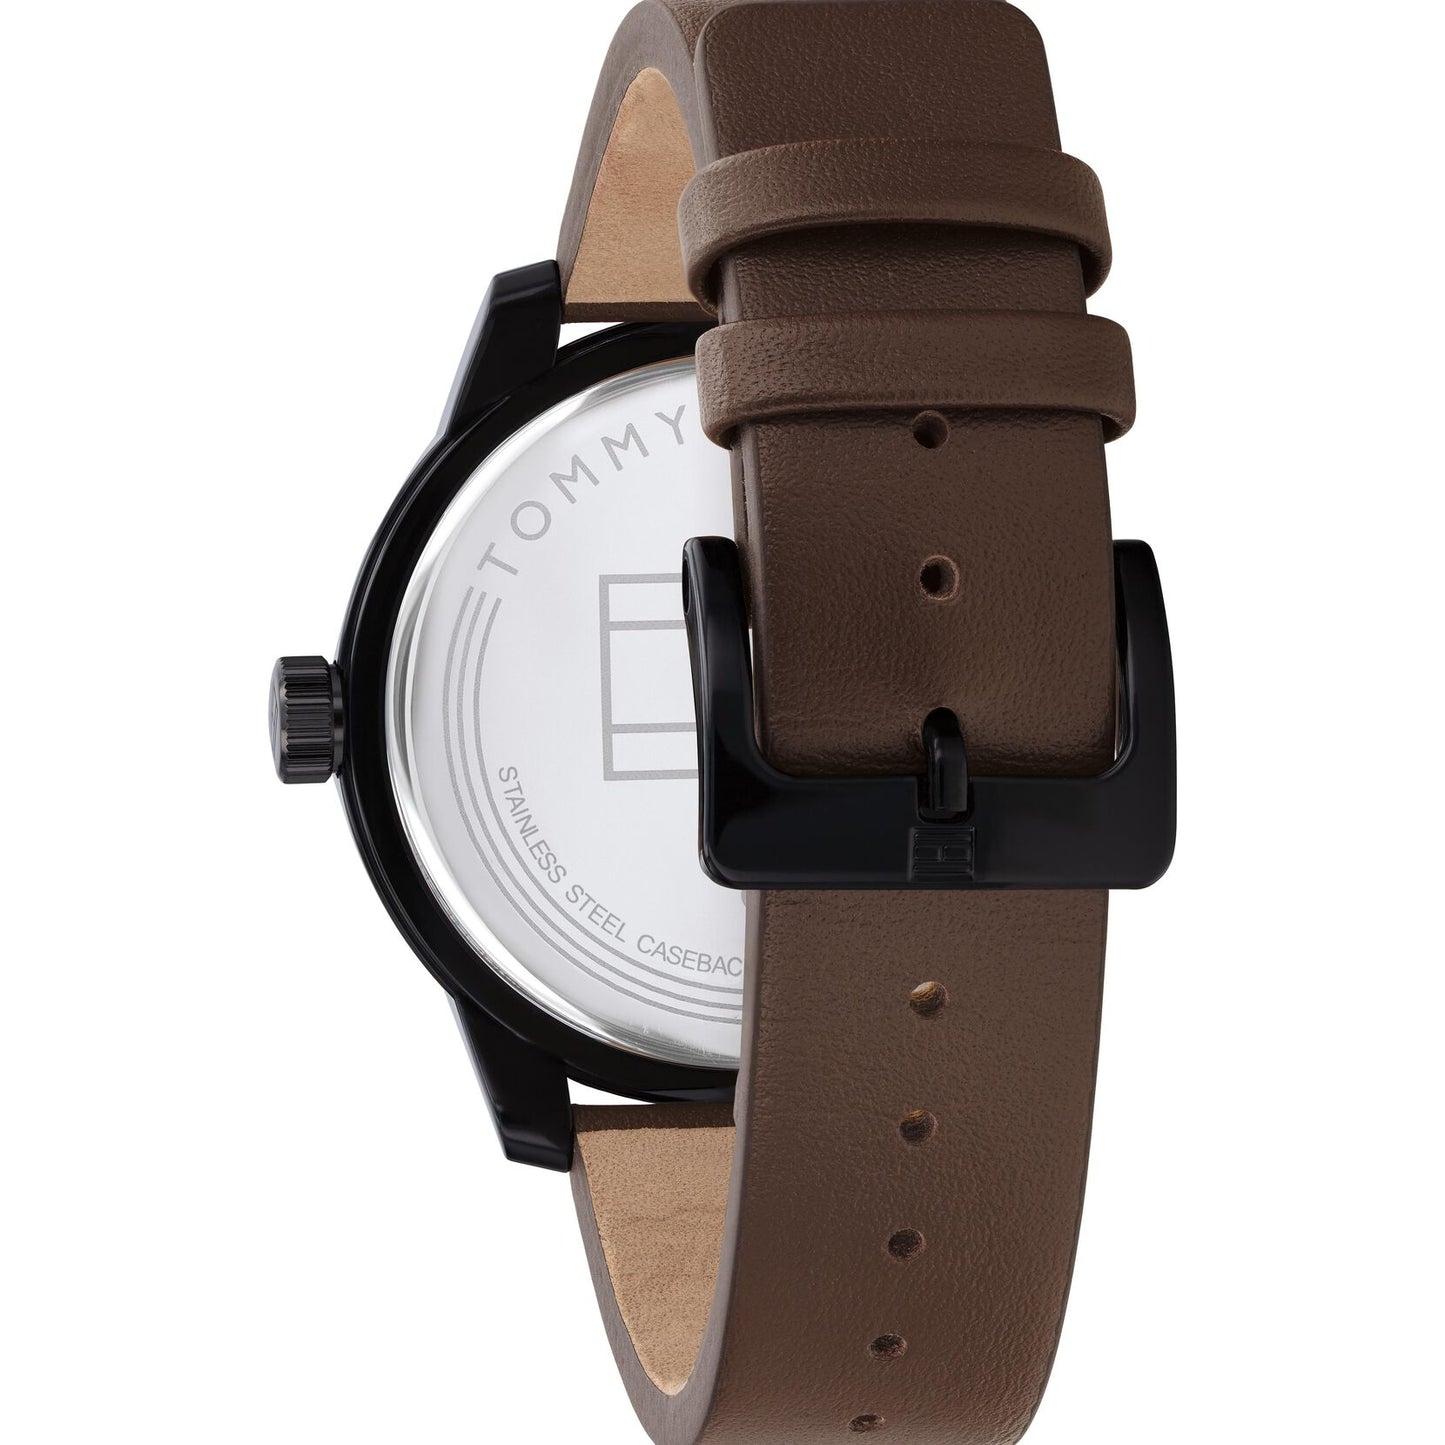 Relógio importado TOMMY HILFIGER masculino pulseira couro marrom com mostrador preto 44mm